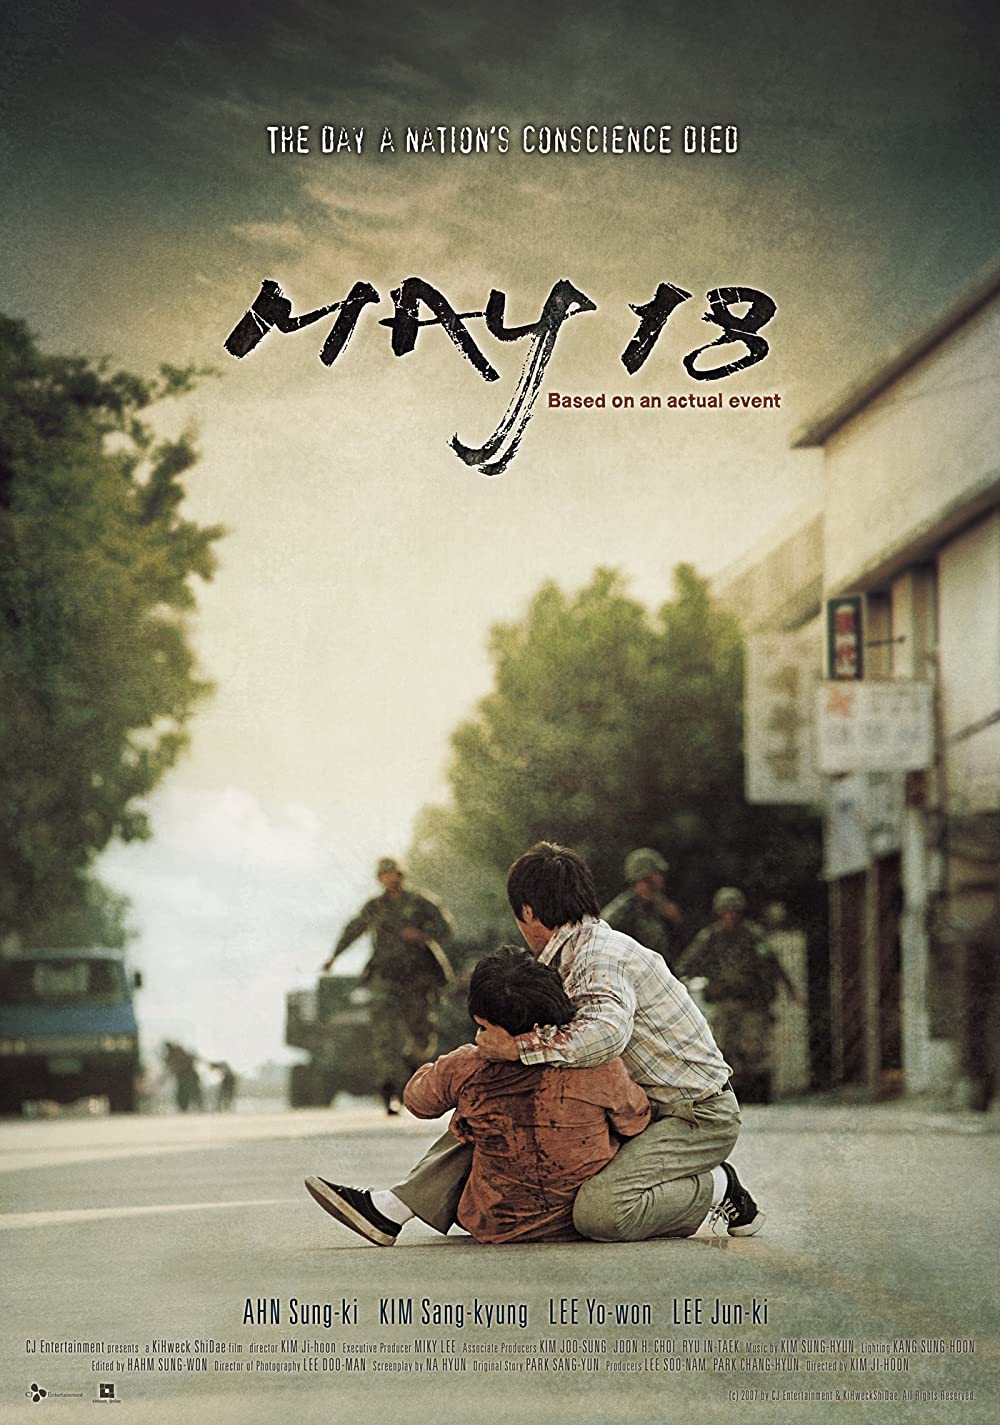 9 Film dan drama Korea tentang pemberontakan, penuh kisah sedih